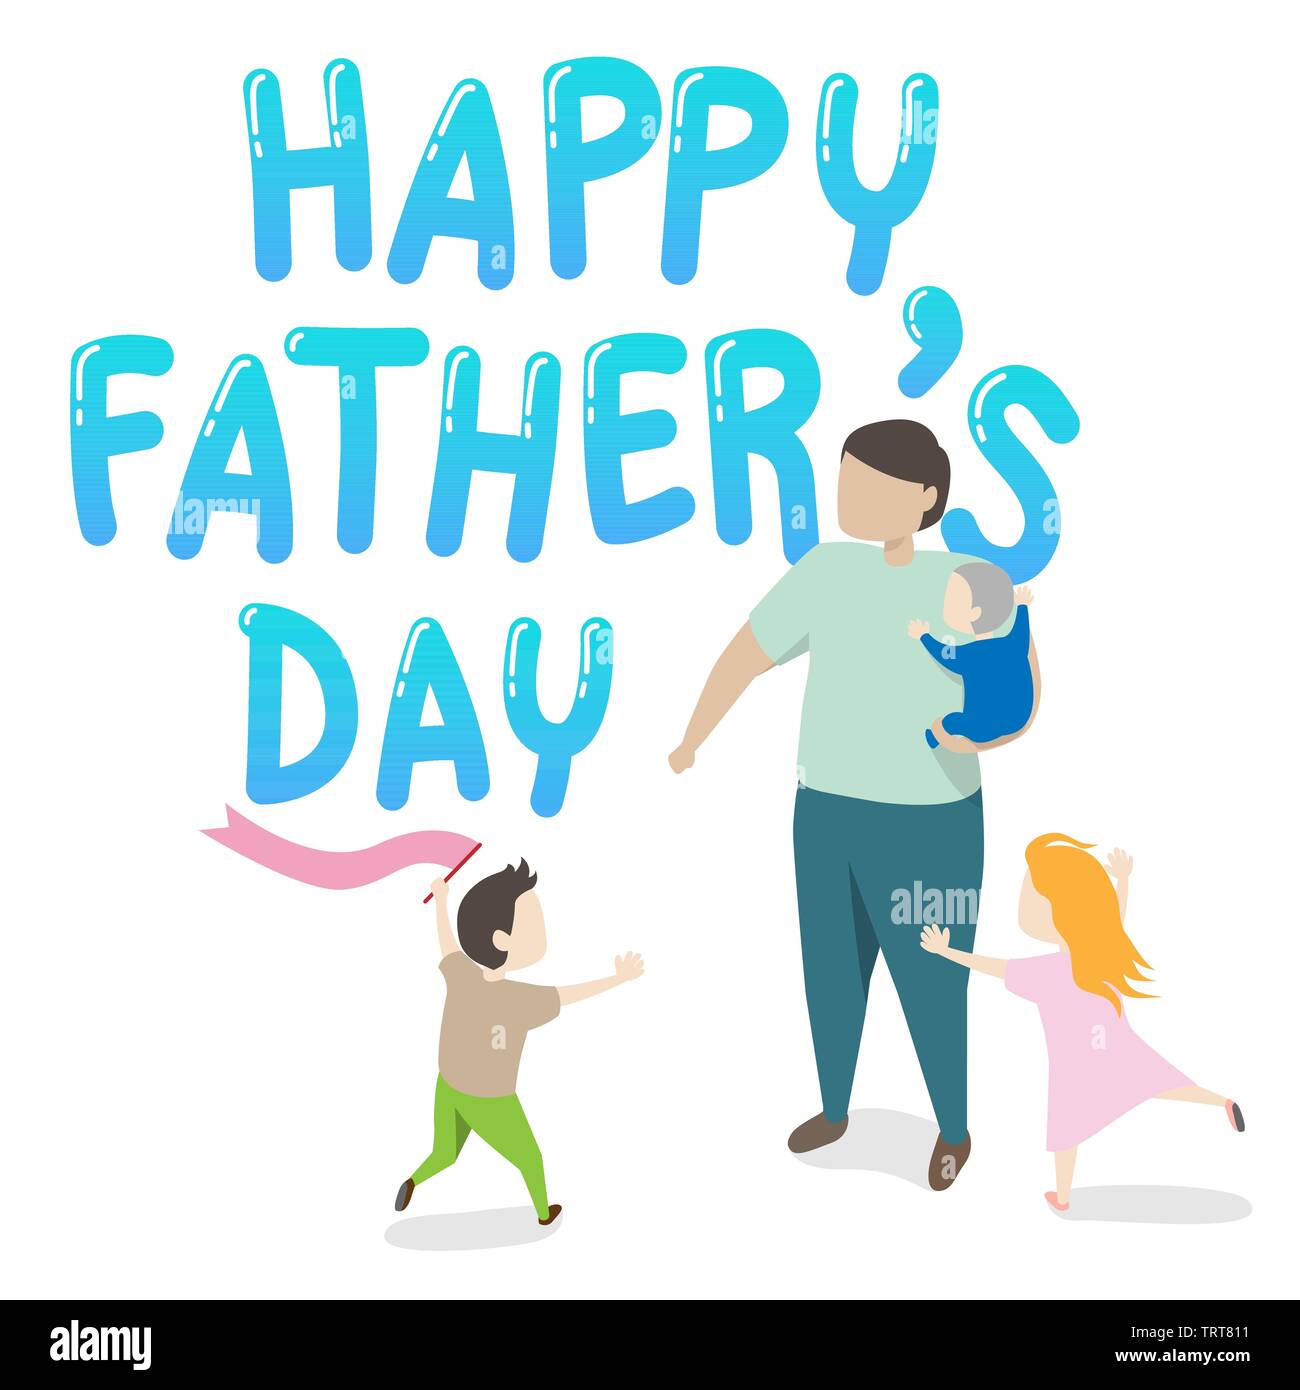 Vecteur d'happy father's day Greeting card. père tenant un enfant dans ses bras avec deux enfants jouant autour de grande famille heureux ensemble. Illustration de Vecteur